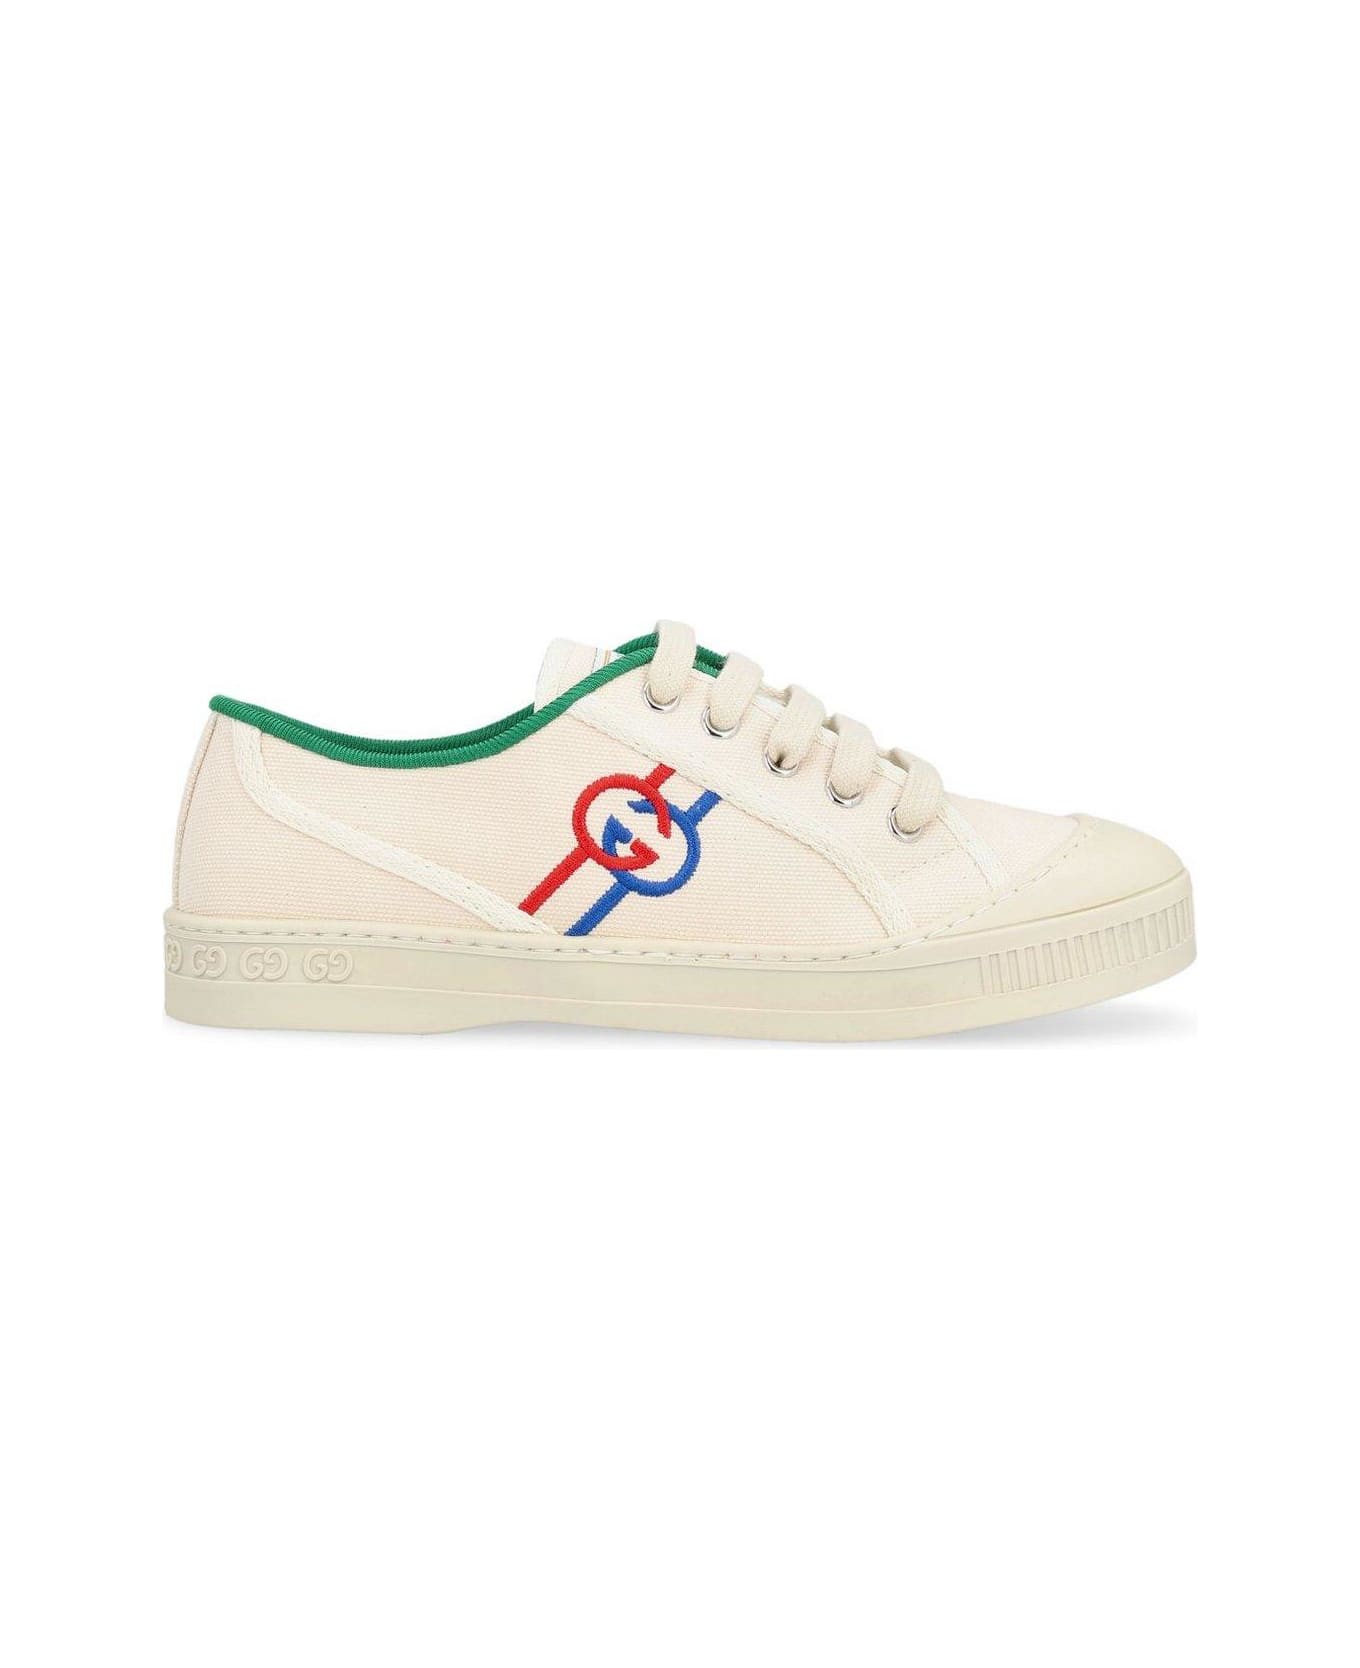 Gucci Tennis 1977 Lace-up Sneakers - Greggio  White シューズ